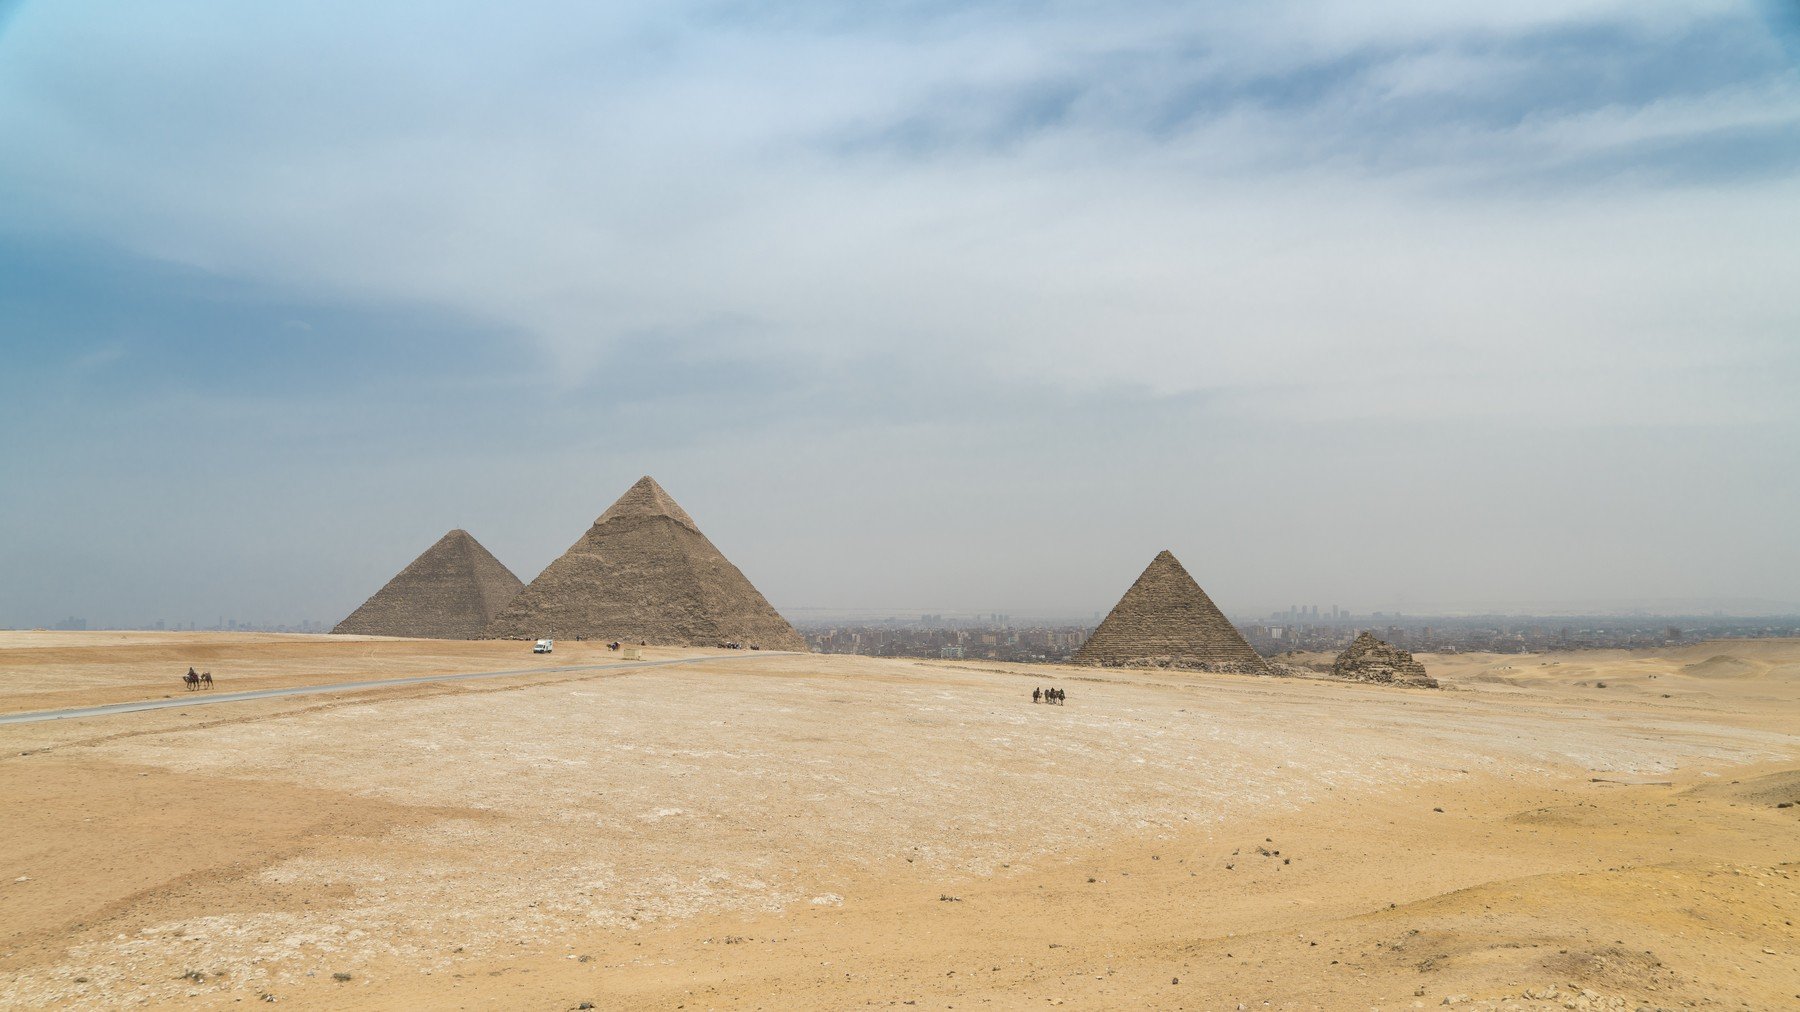 Itt a magyarázat, miért nem találtak múmiákat a piramisokban